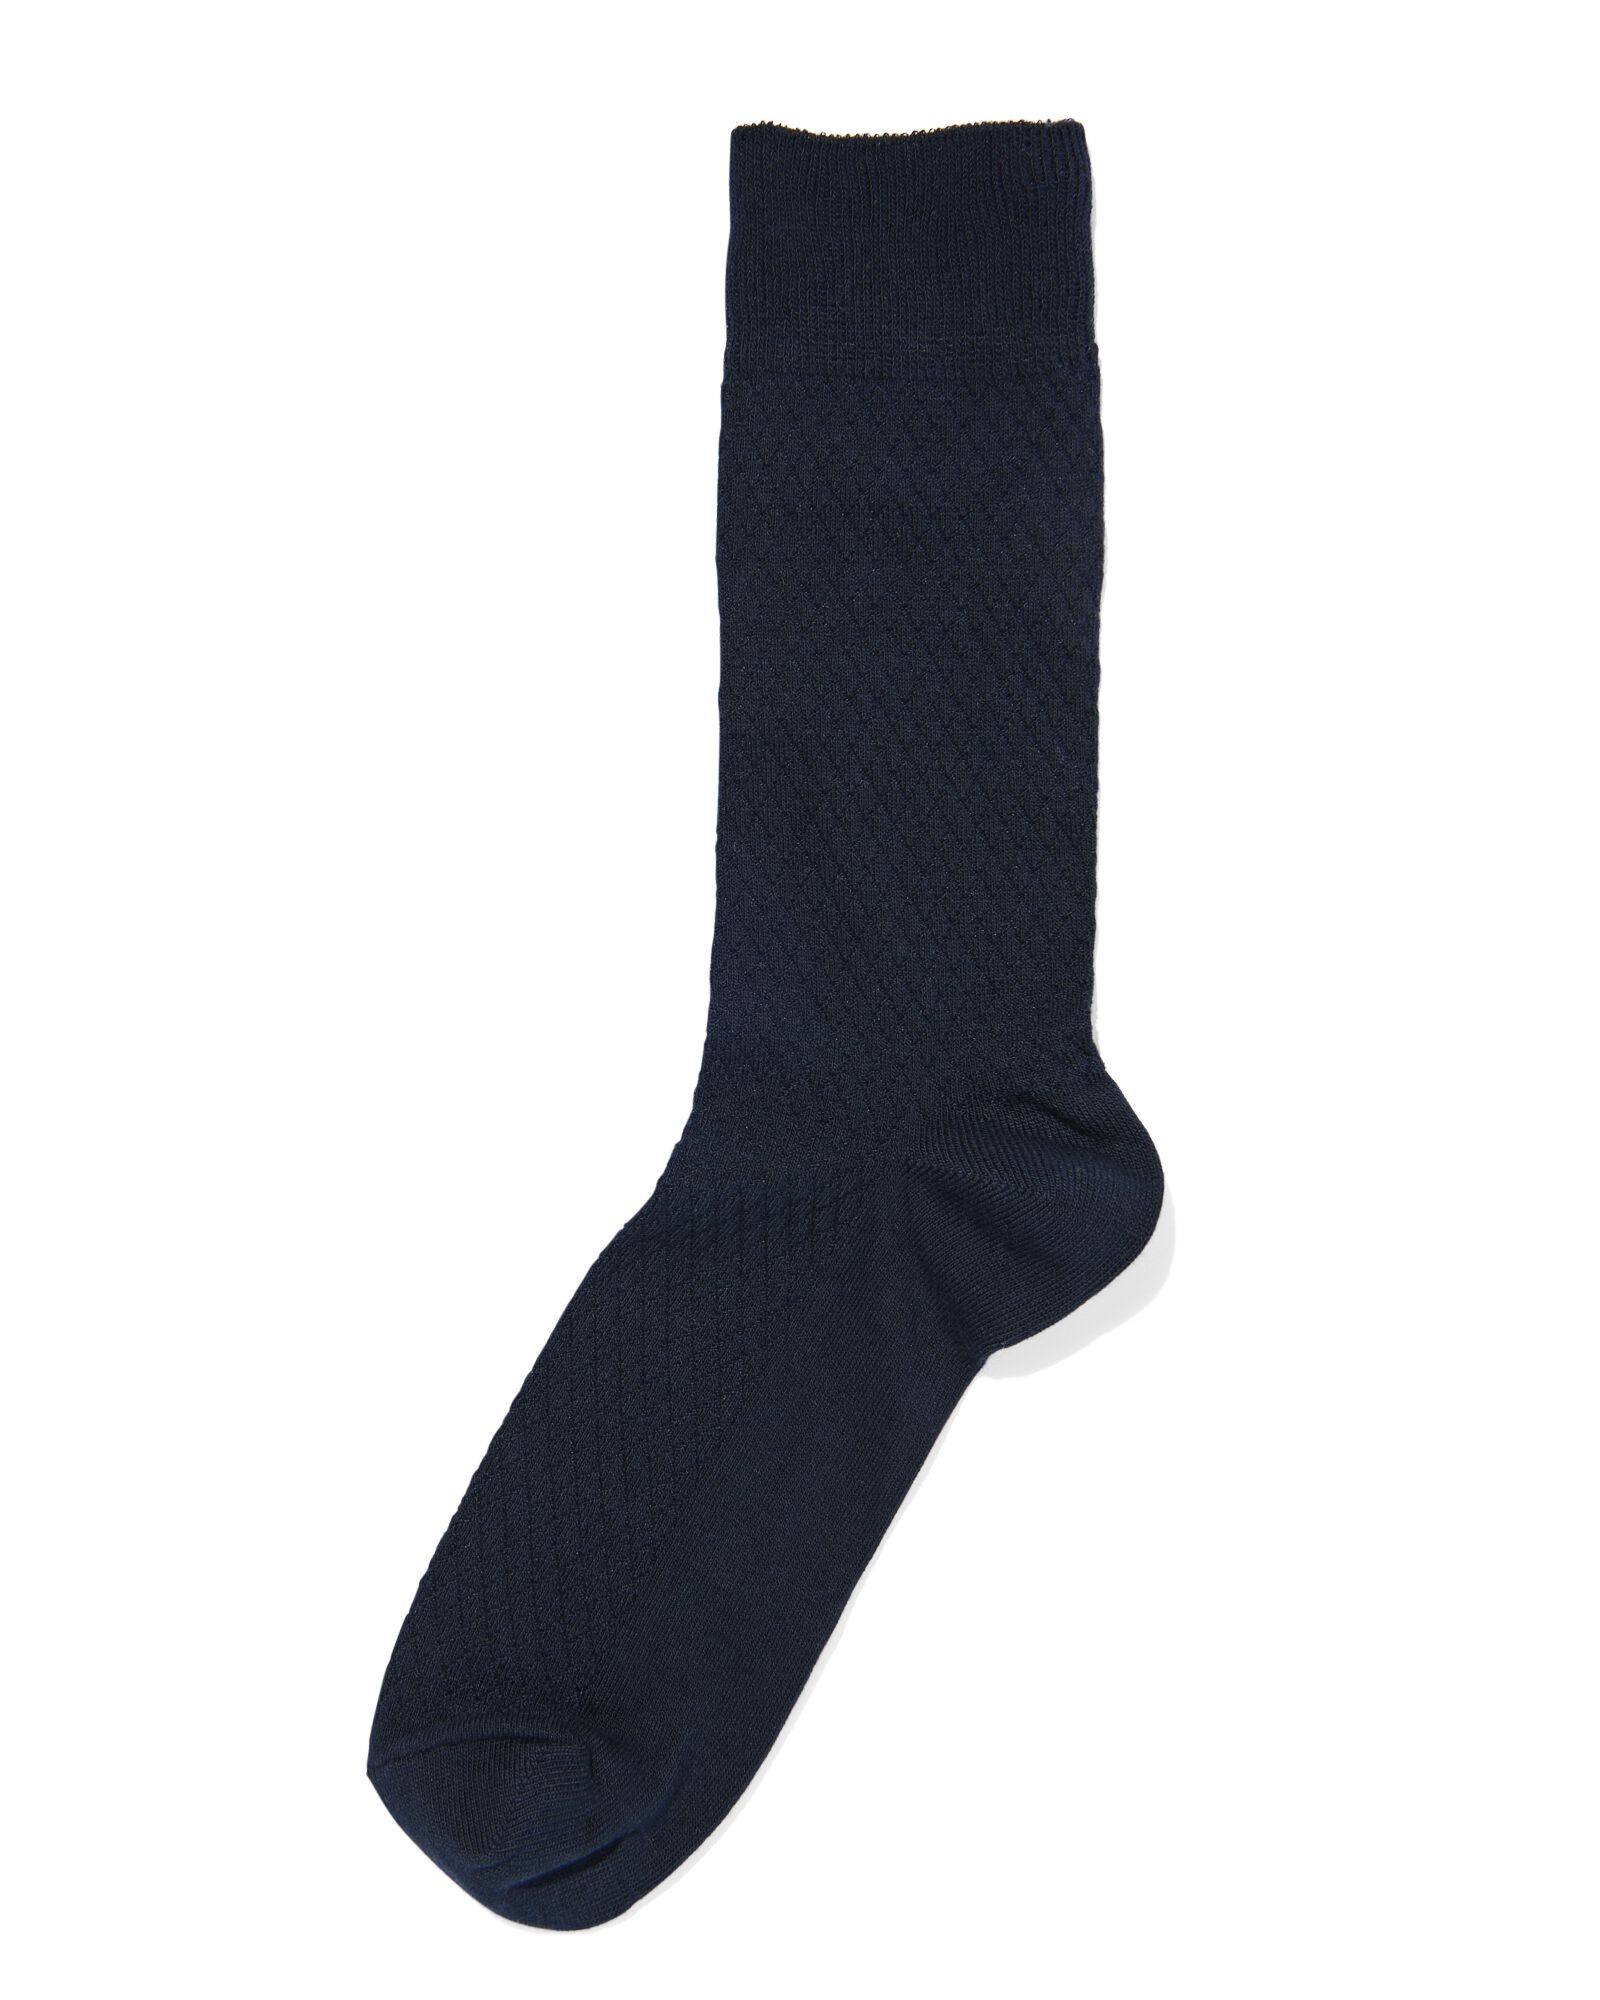 Image of HEMA Heren Sokken Met Katoen Textuur Donkerblauw (donkerblauw)